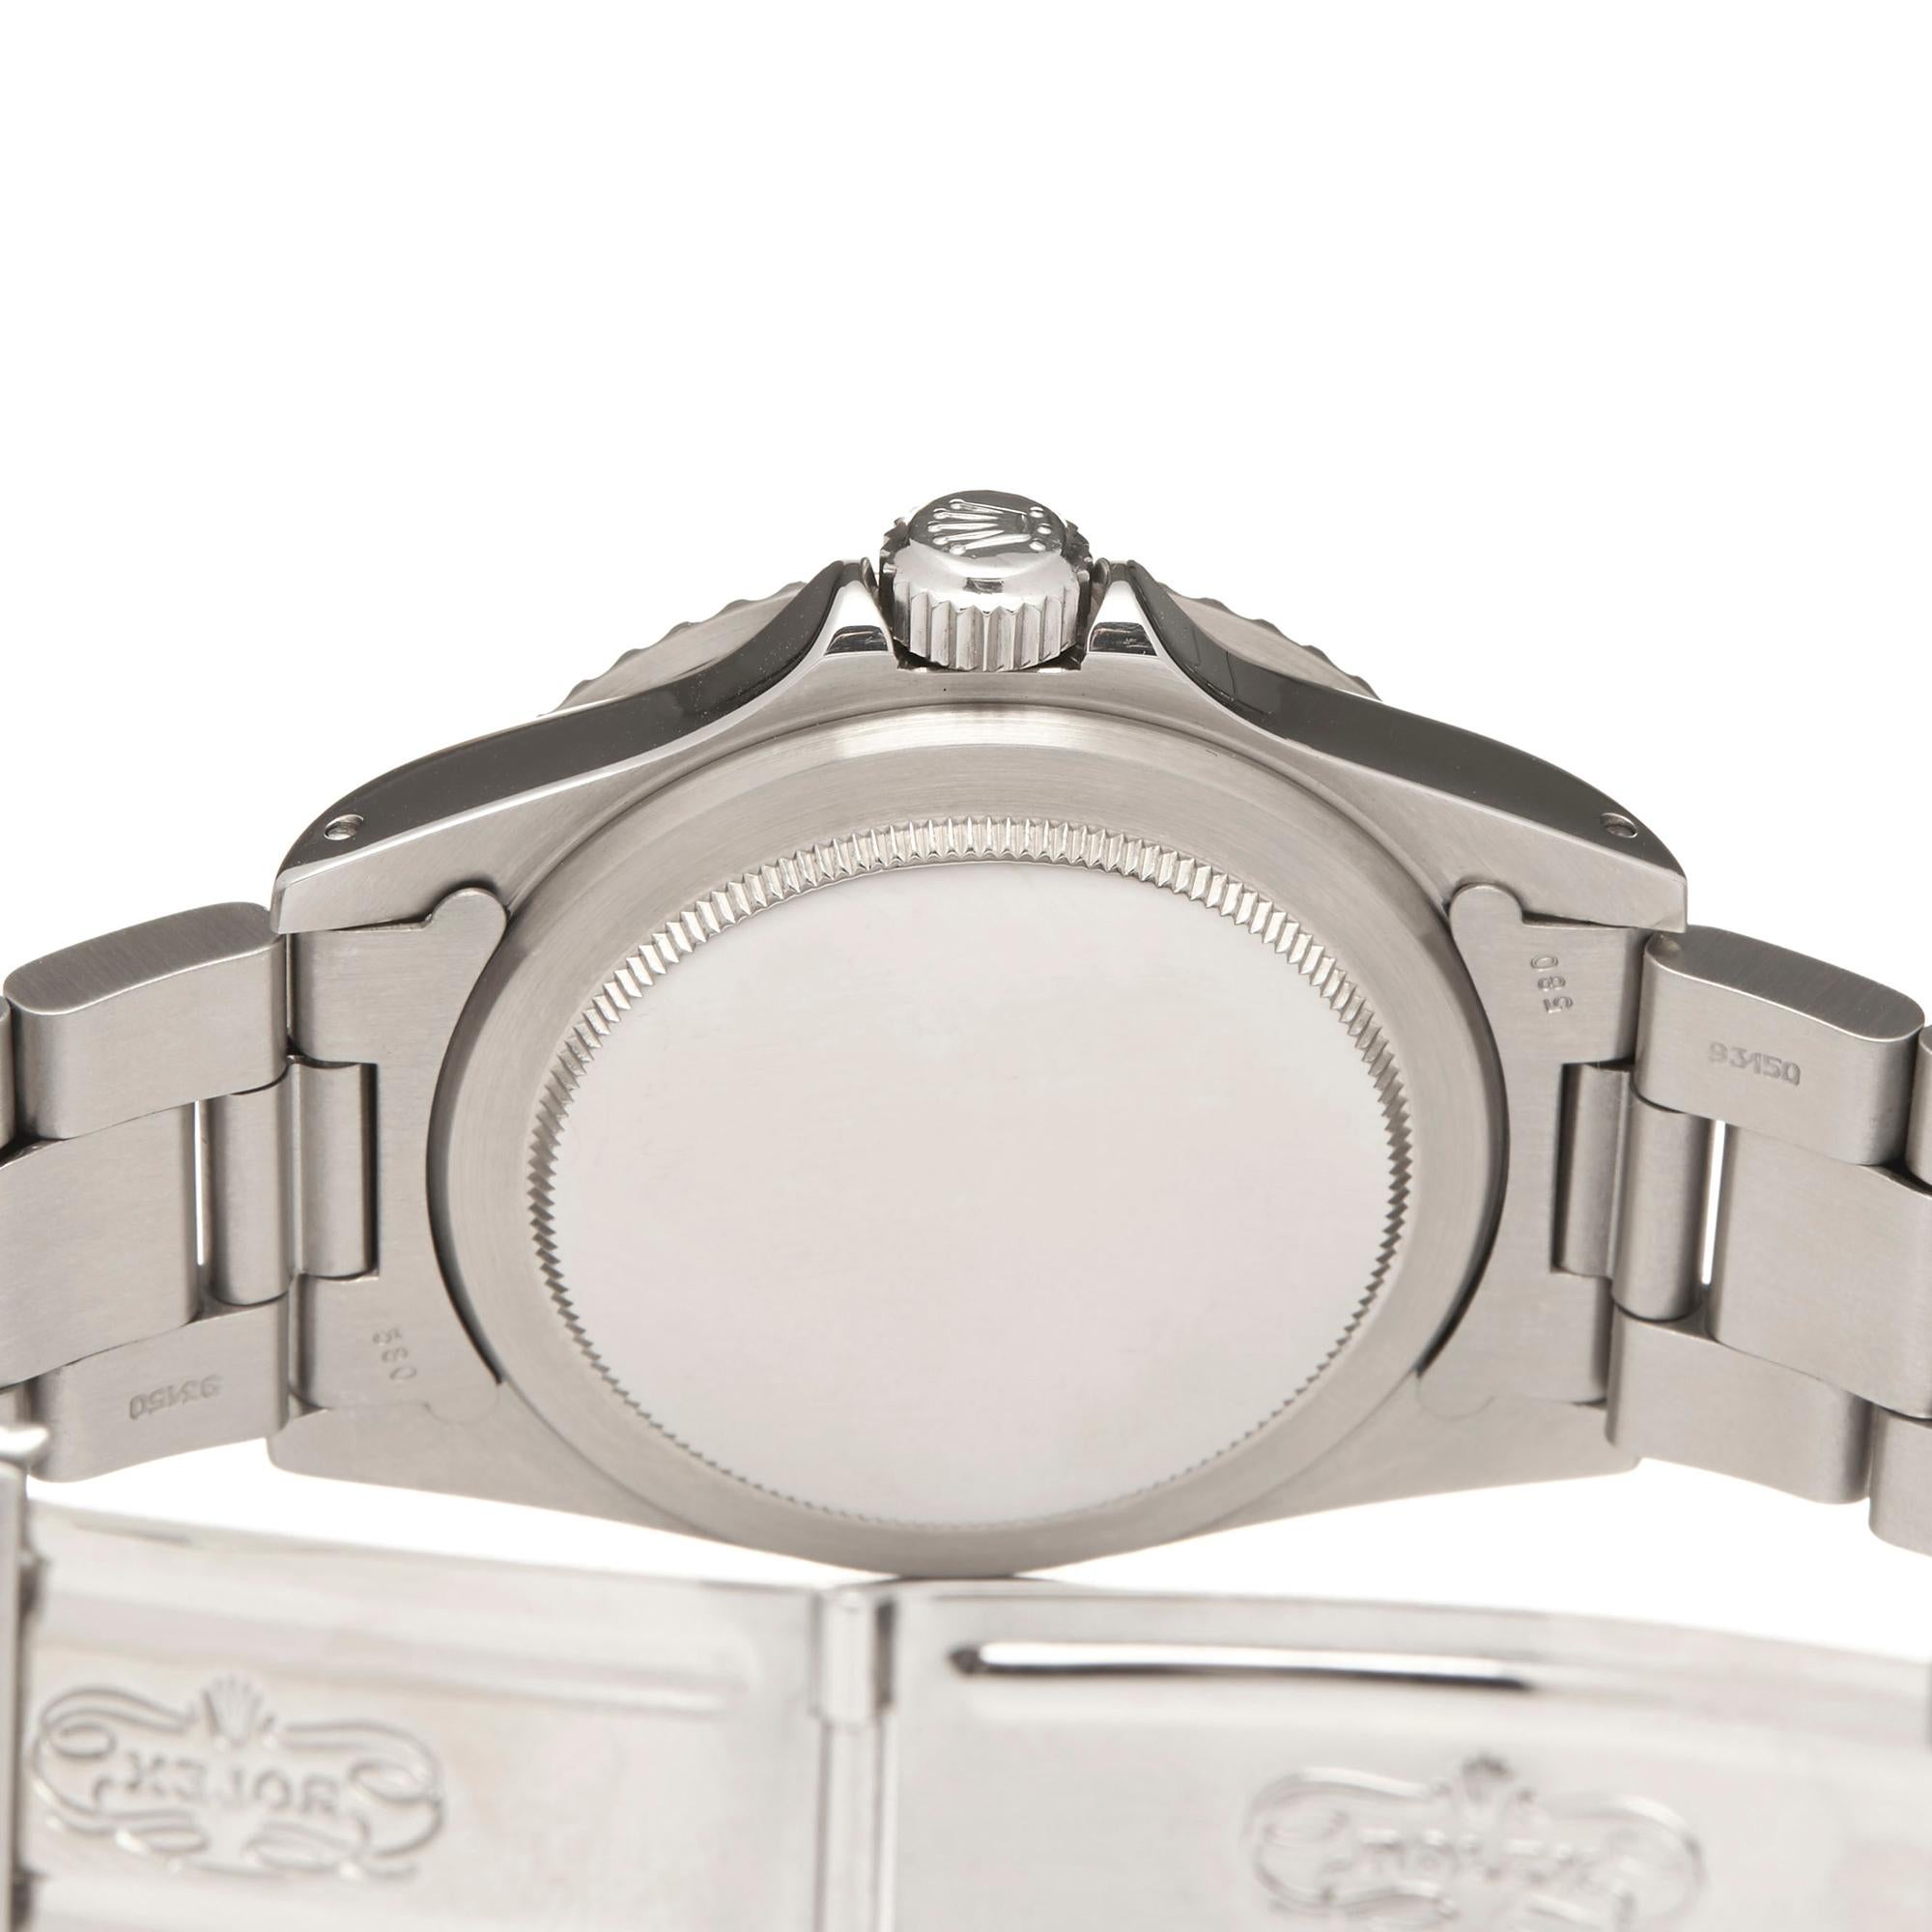 Rolex Submariner Non Date Stainless Steel 5513 Wristwatch 2